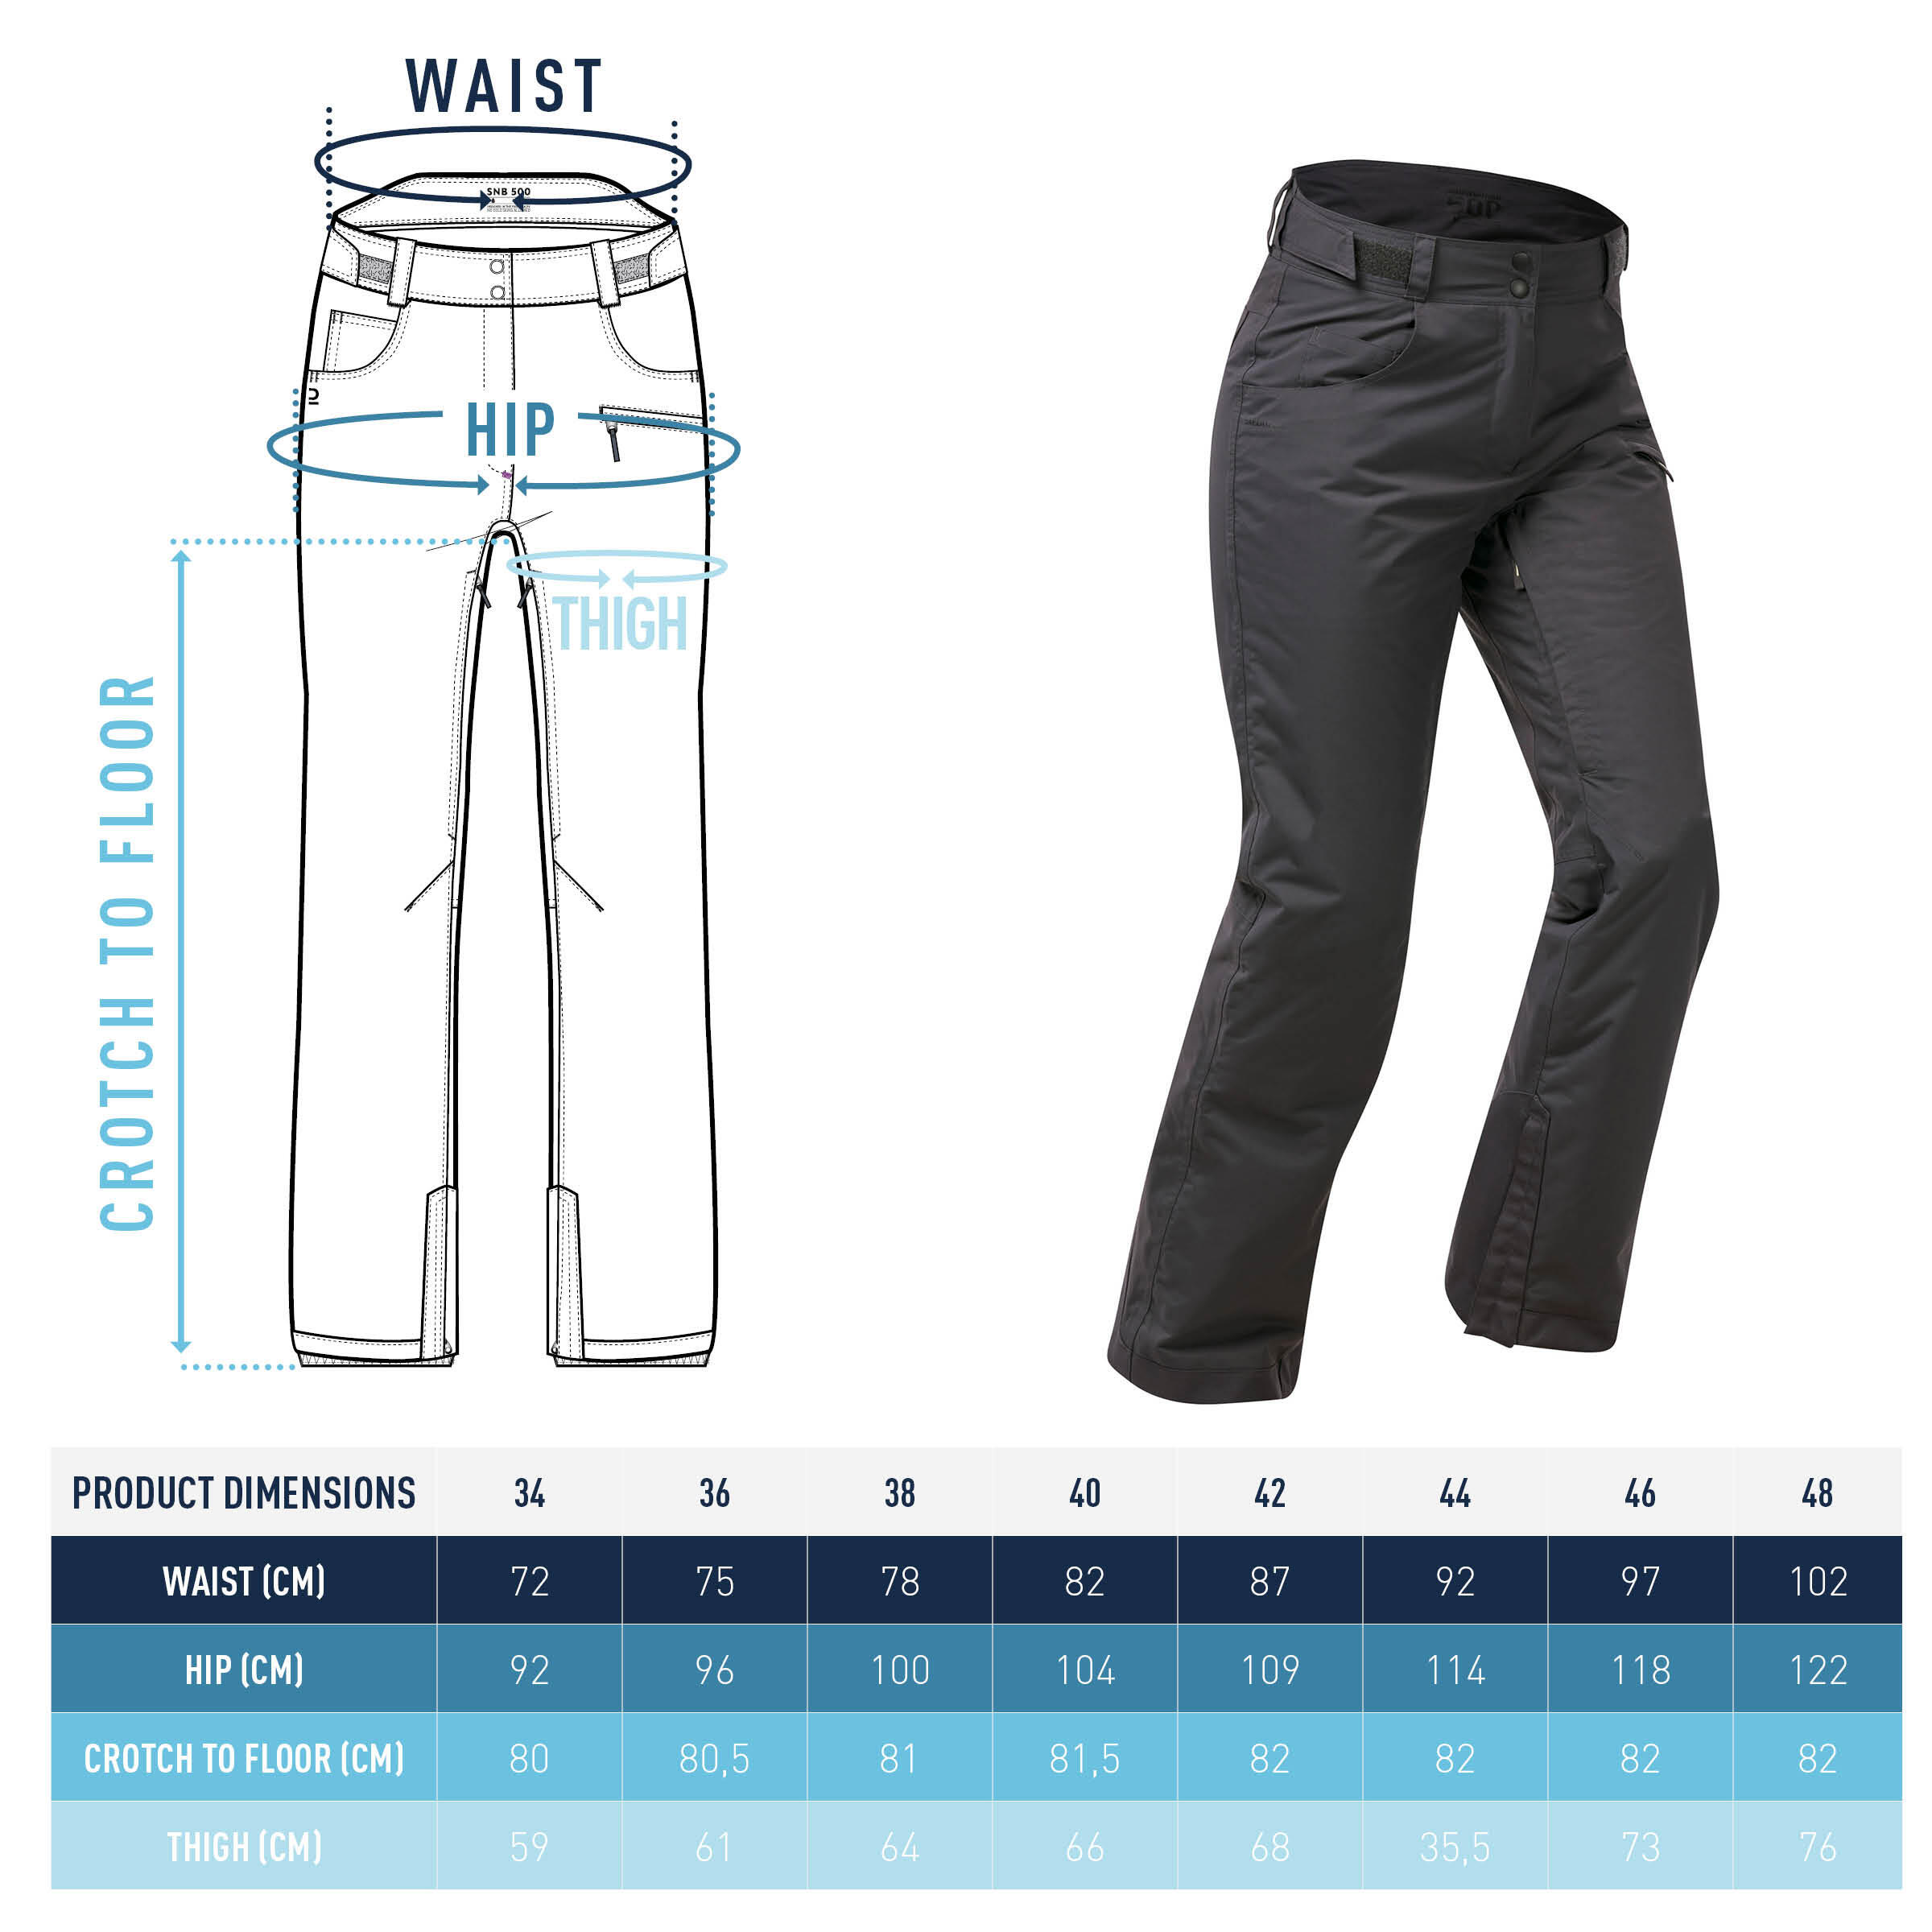 Women's waterproof snowboard trousers - SNB 500 - Grey 10/10